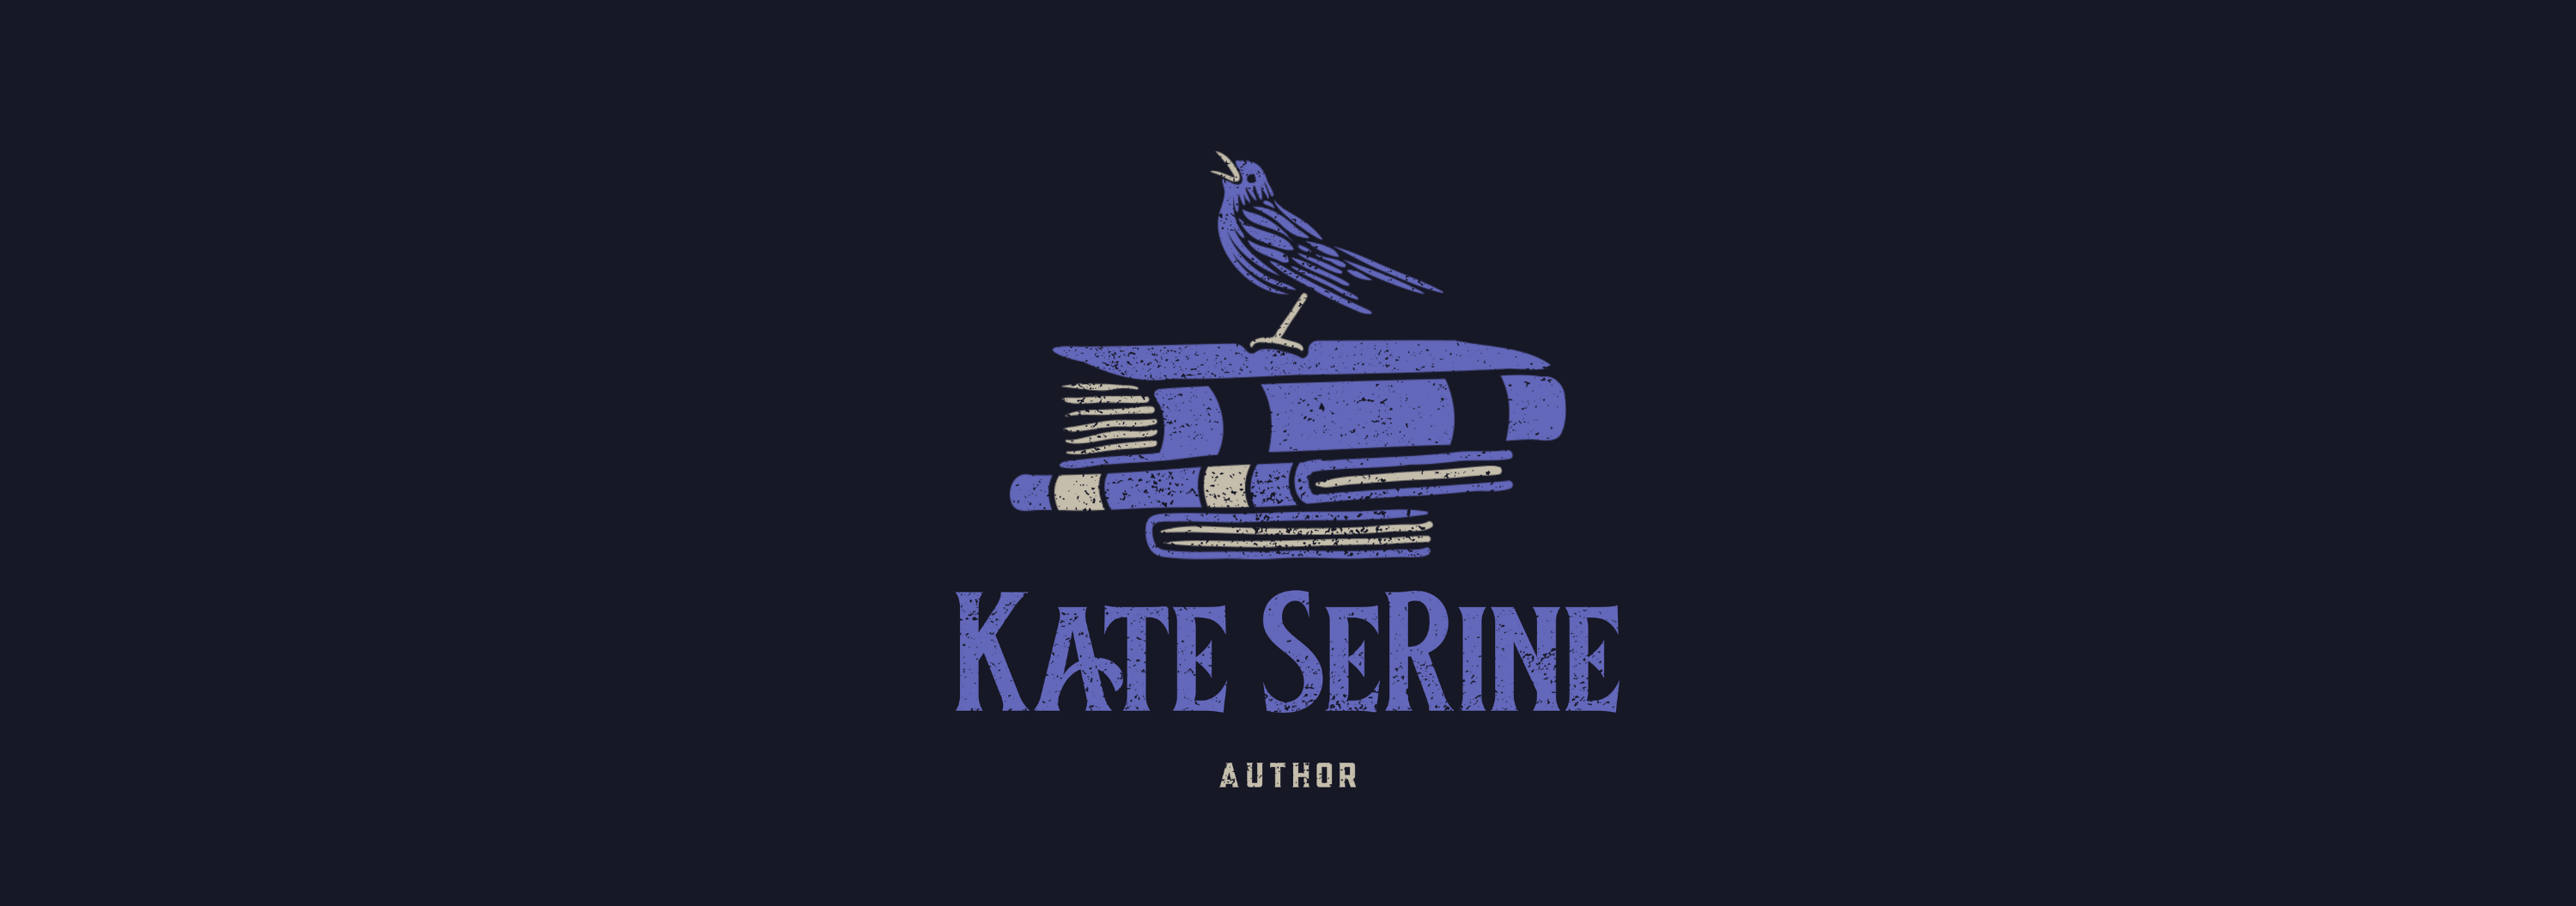 Kate SeRine